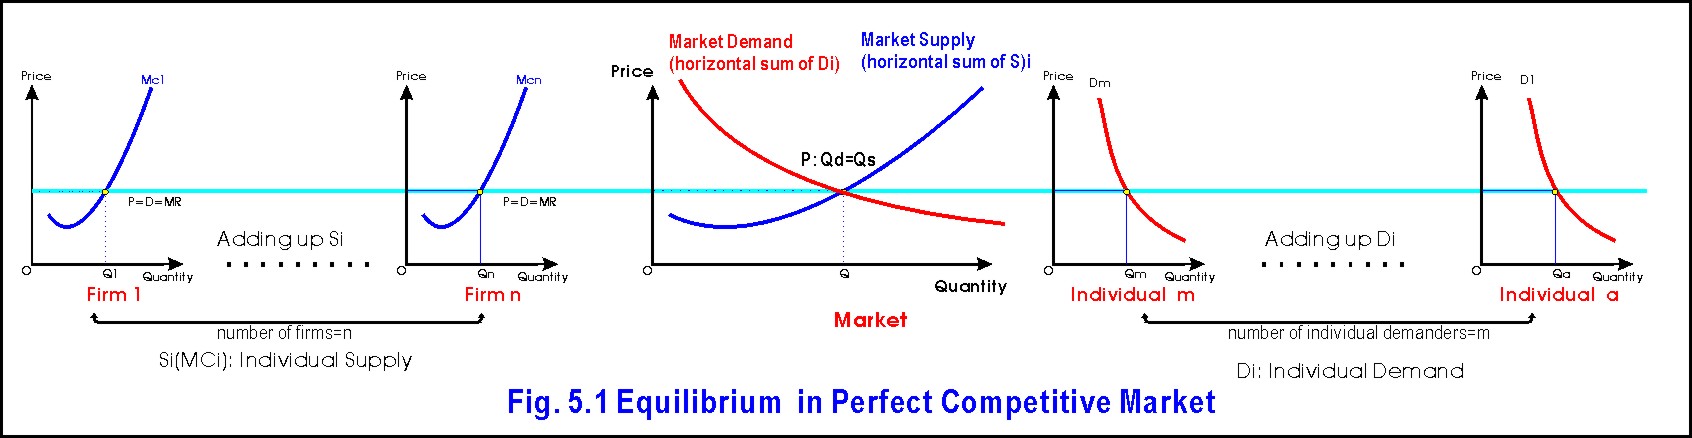 perfect competition equilibrium